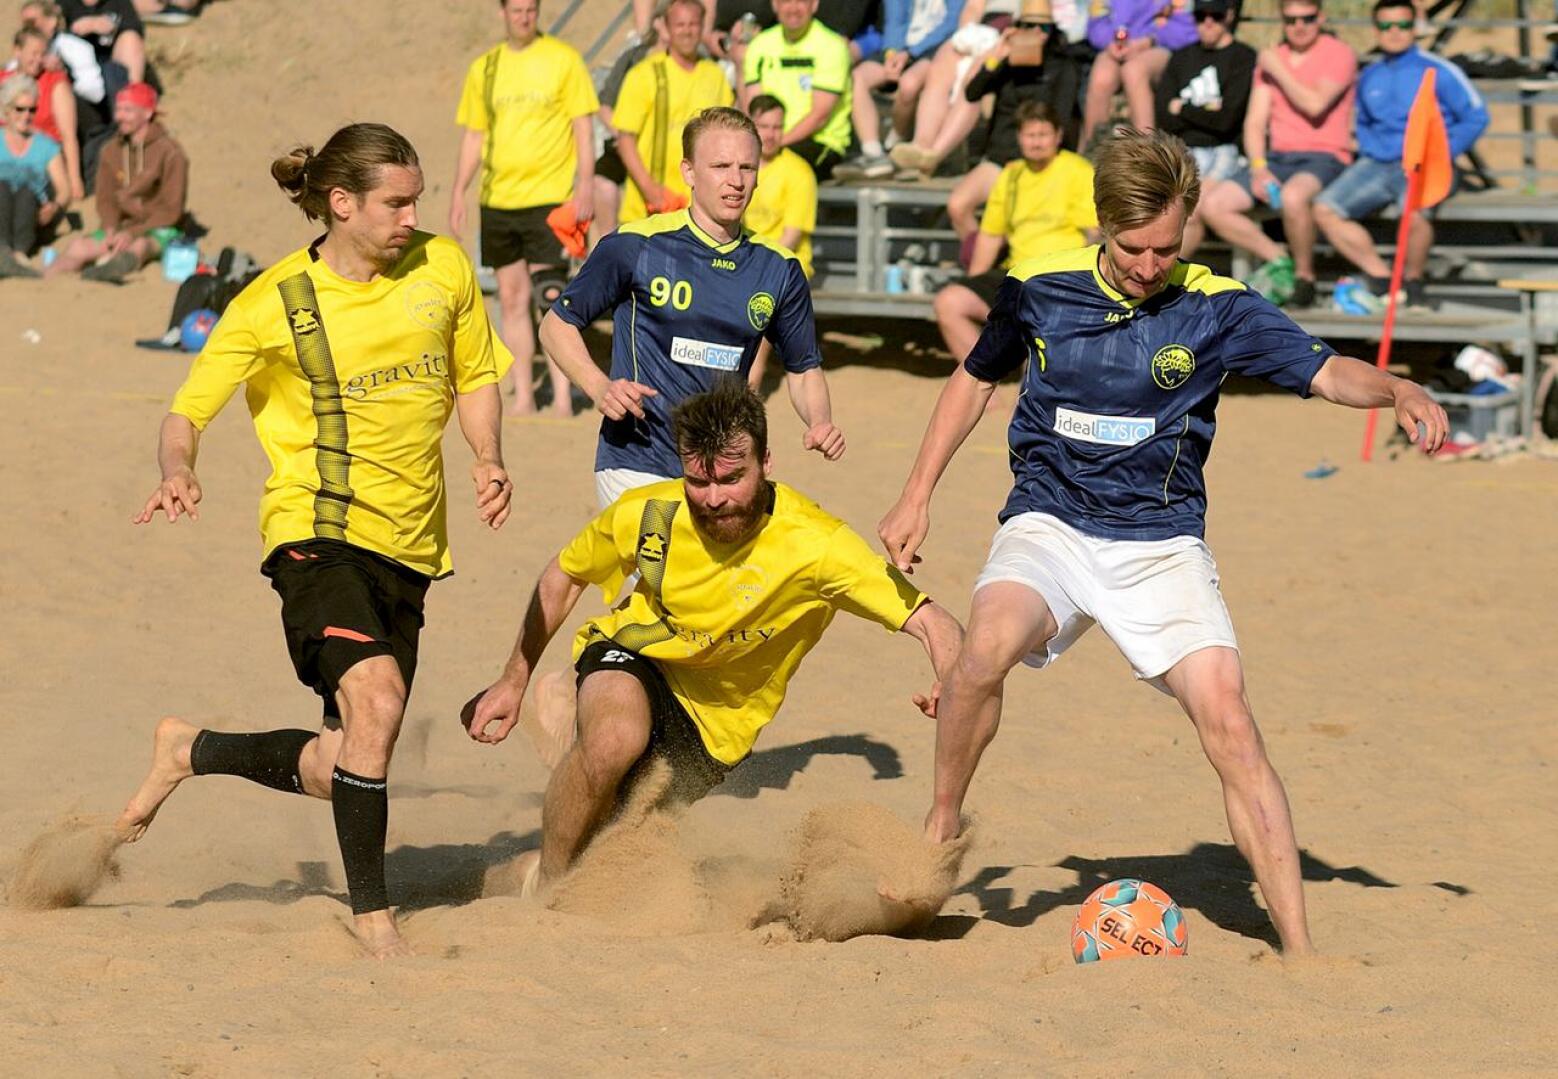 Hiekkasärkillä voidaan myös tänä vuonna pelata beach futista, vaikka turnaus oli keväällä vaakalaudalla koronaviruspandemian vuoksi.